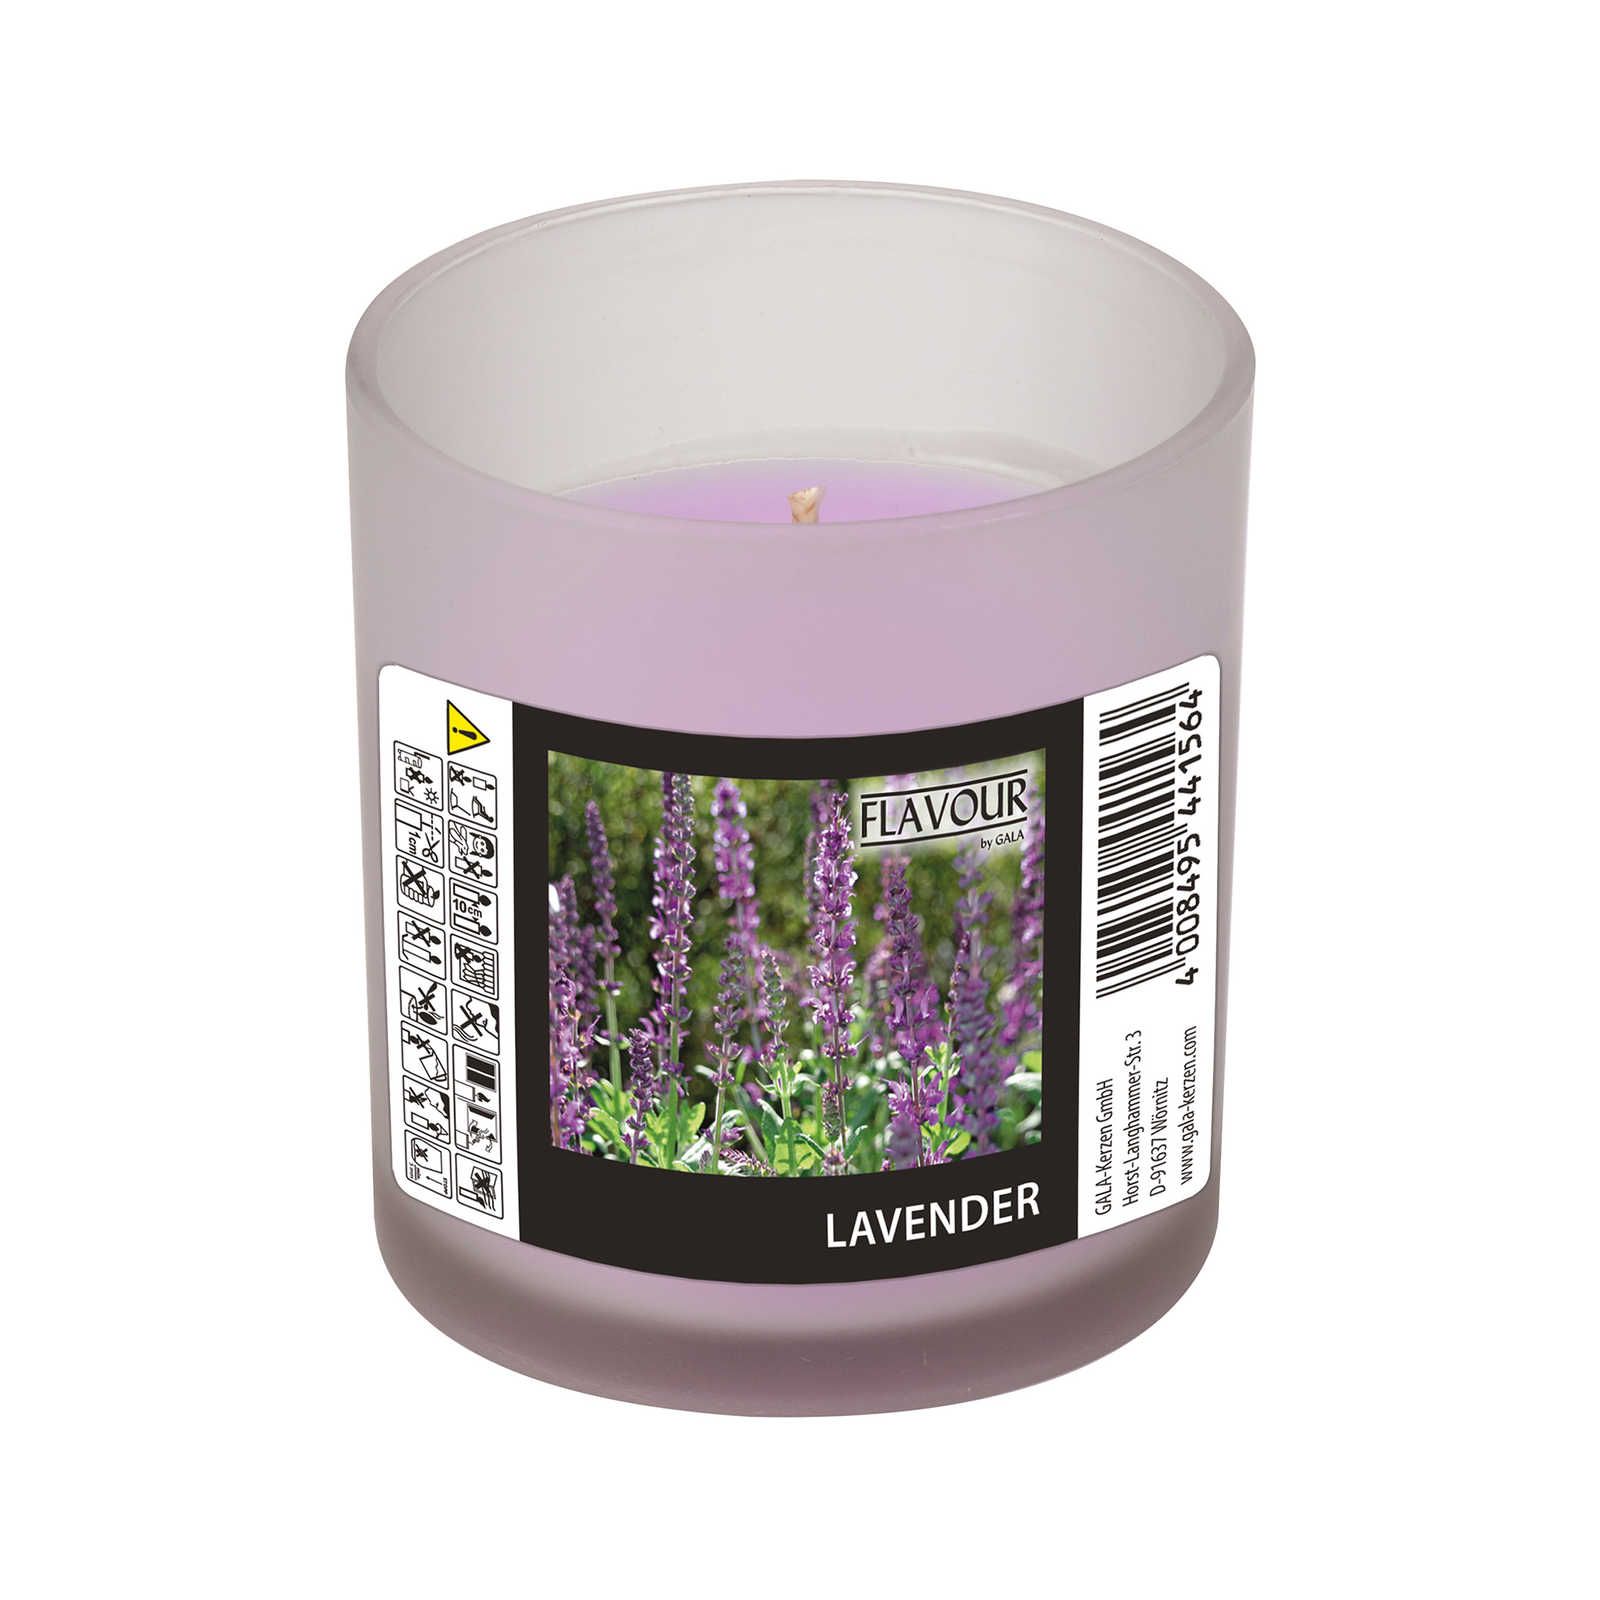             Lavendel geurkaars met delicate geur - 110g
        